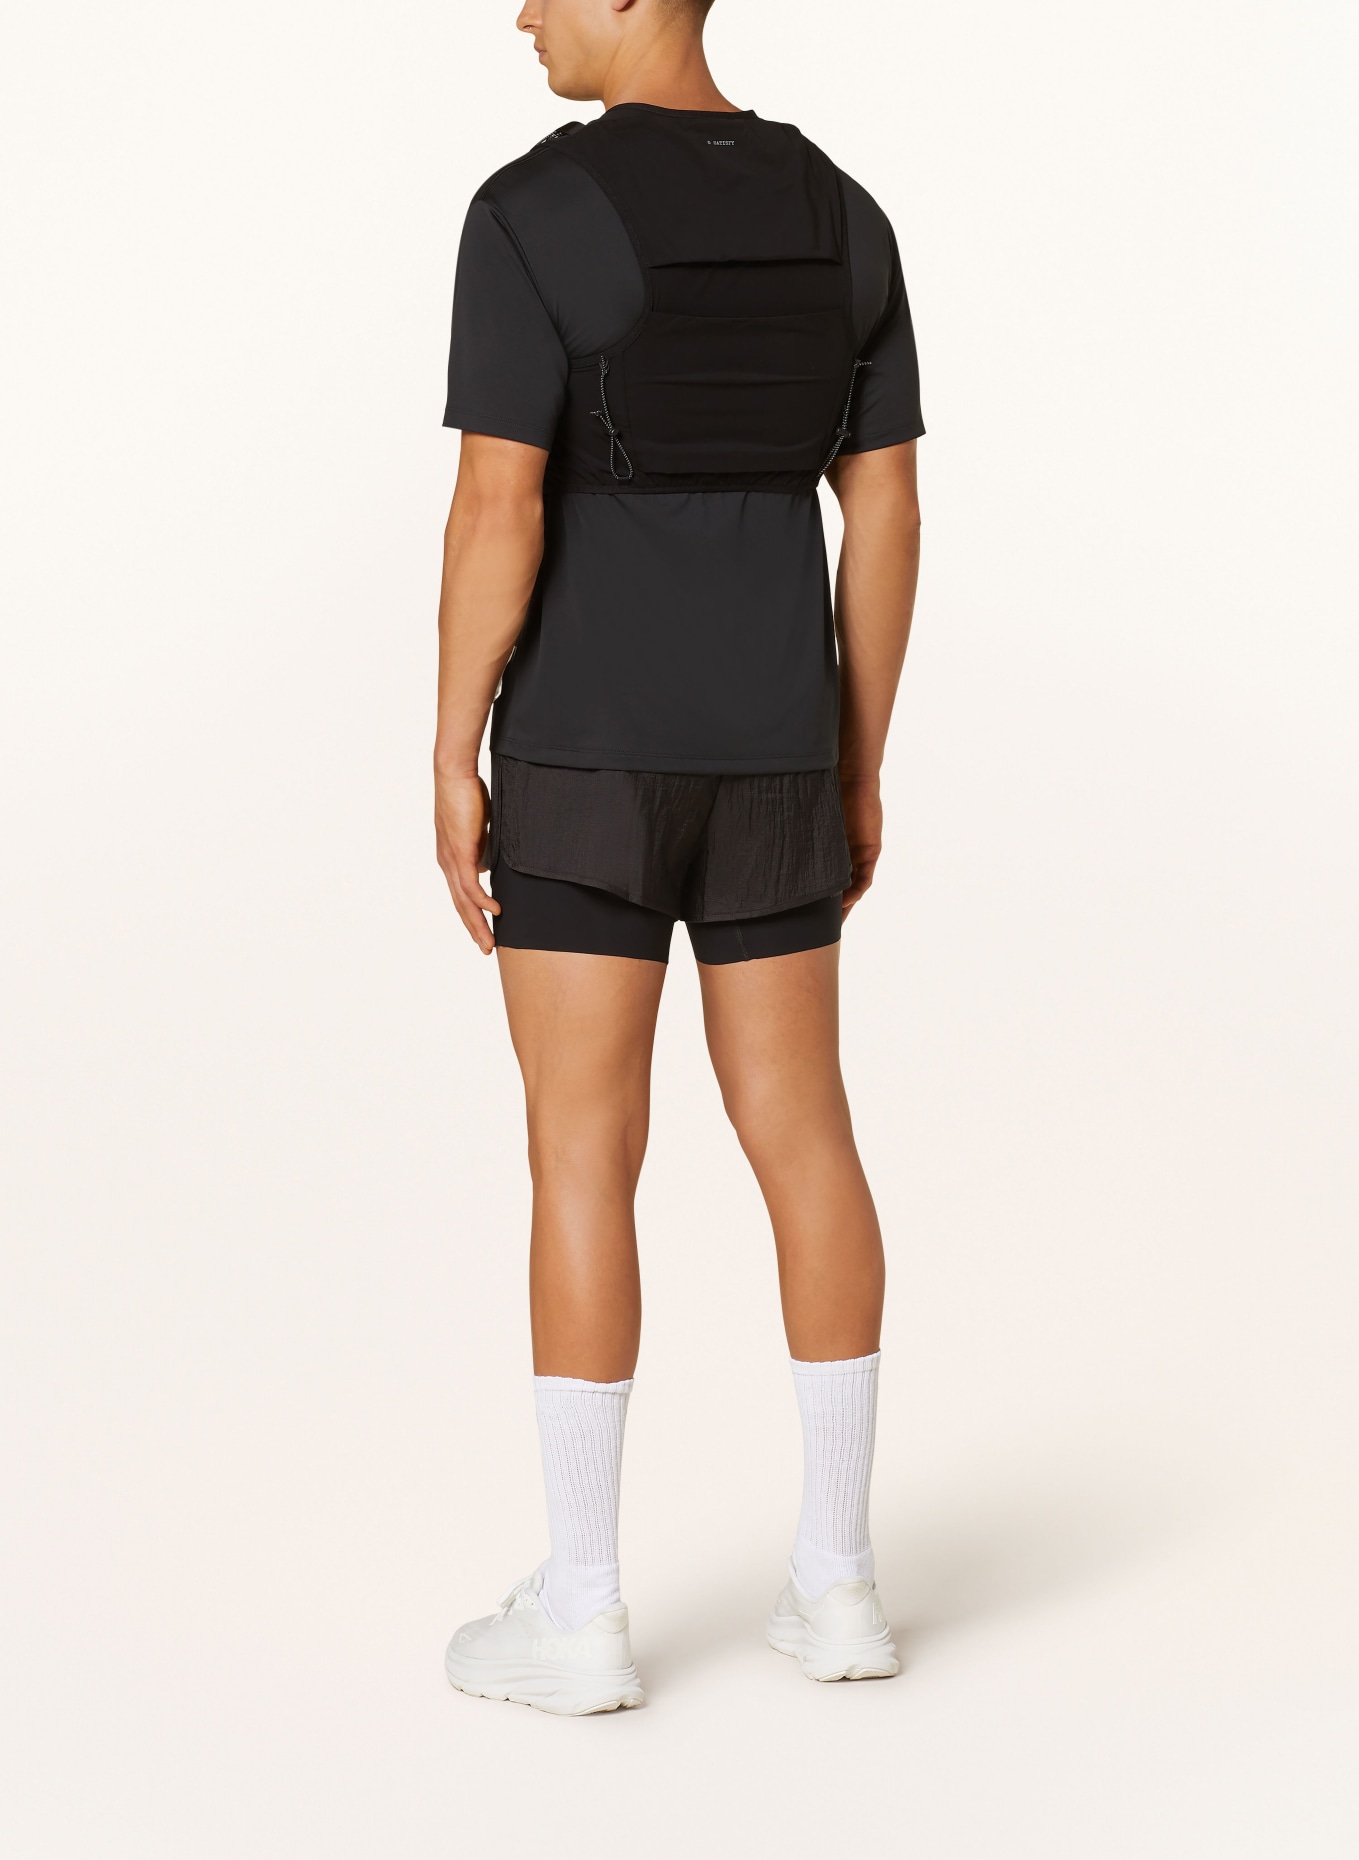 SATISFY Running vest JUSTICE™ CORDURA®, Color: BLACK (Image 3)